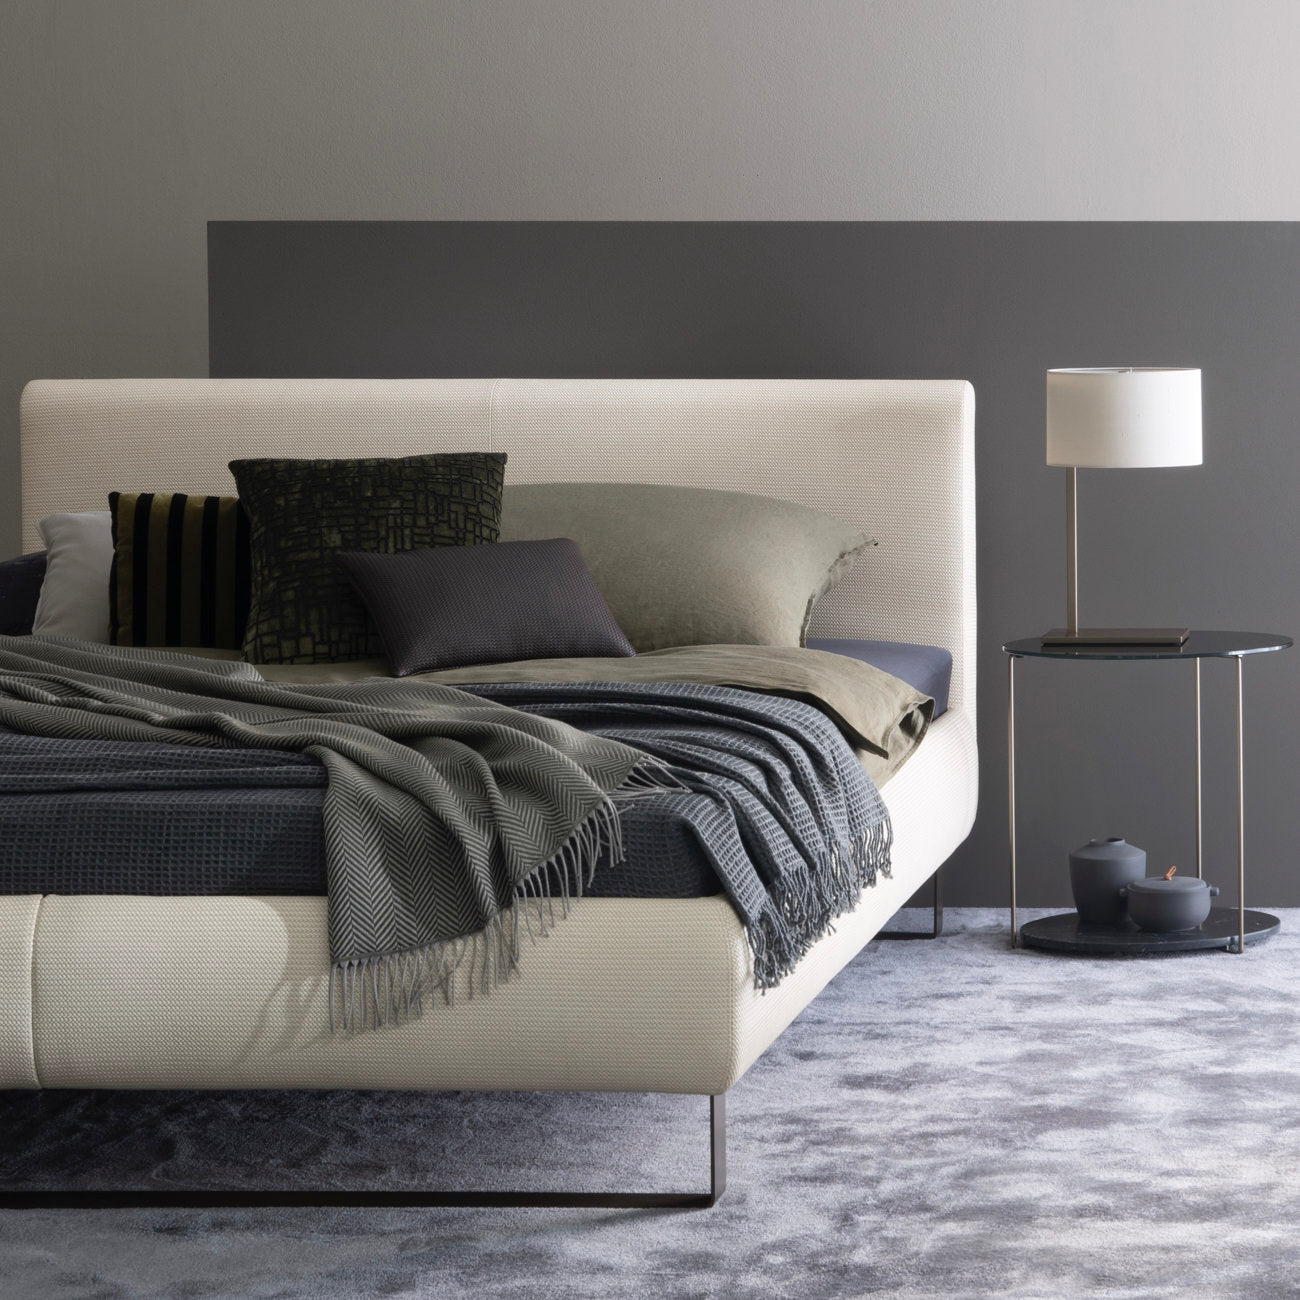 PLAISIR bed by Christine Kröncke Interior Design